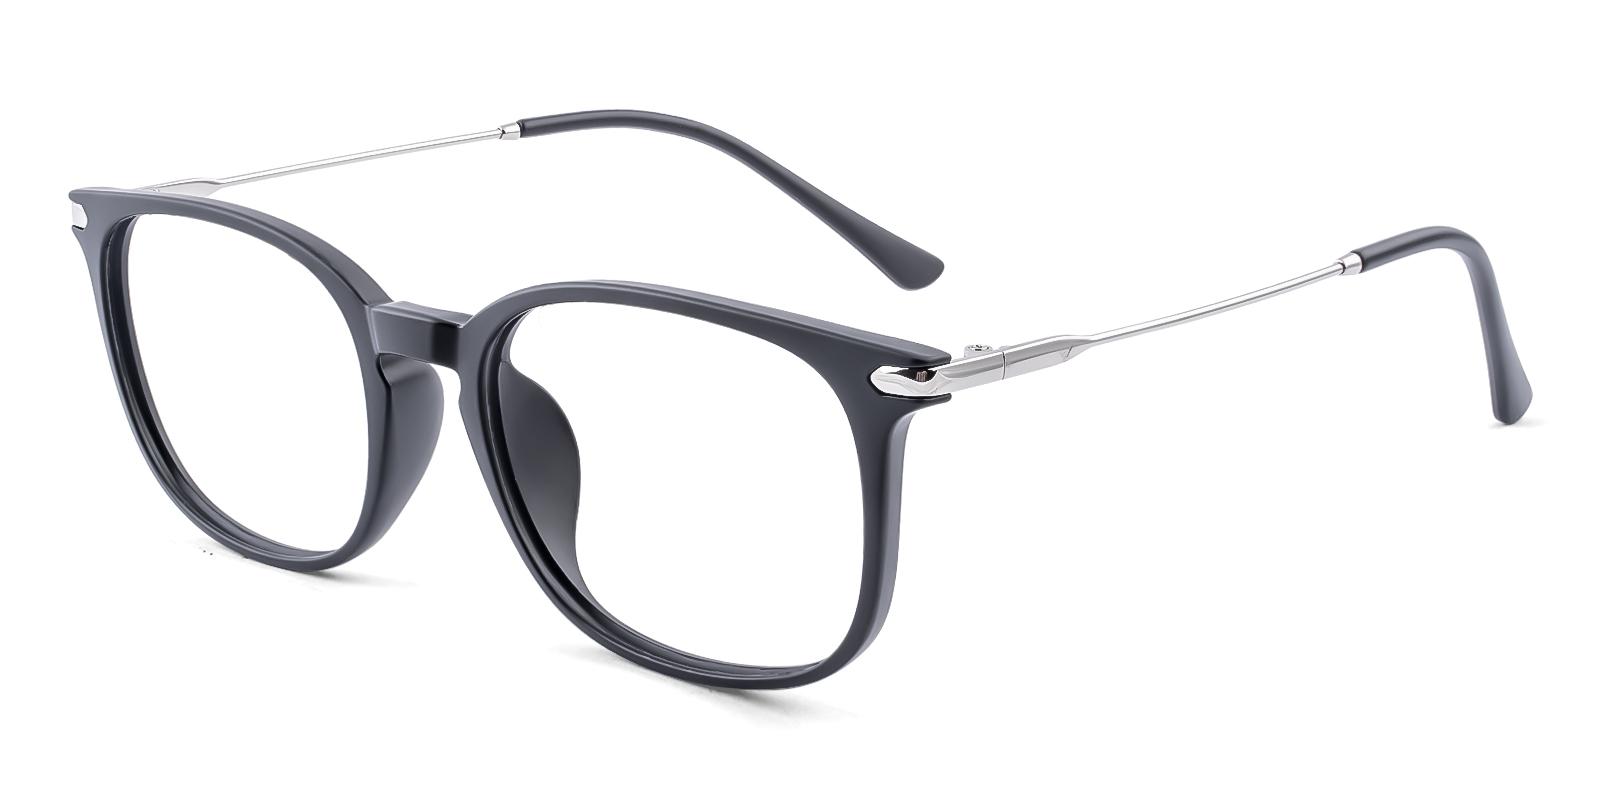 Mercier Matte-black Plastic Eyeglasses , UniversalBridgeFit Frames from ABBE Glasses